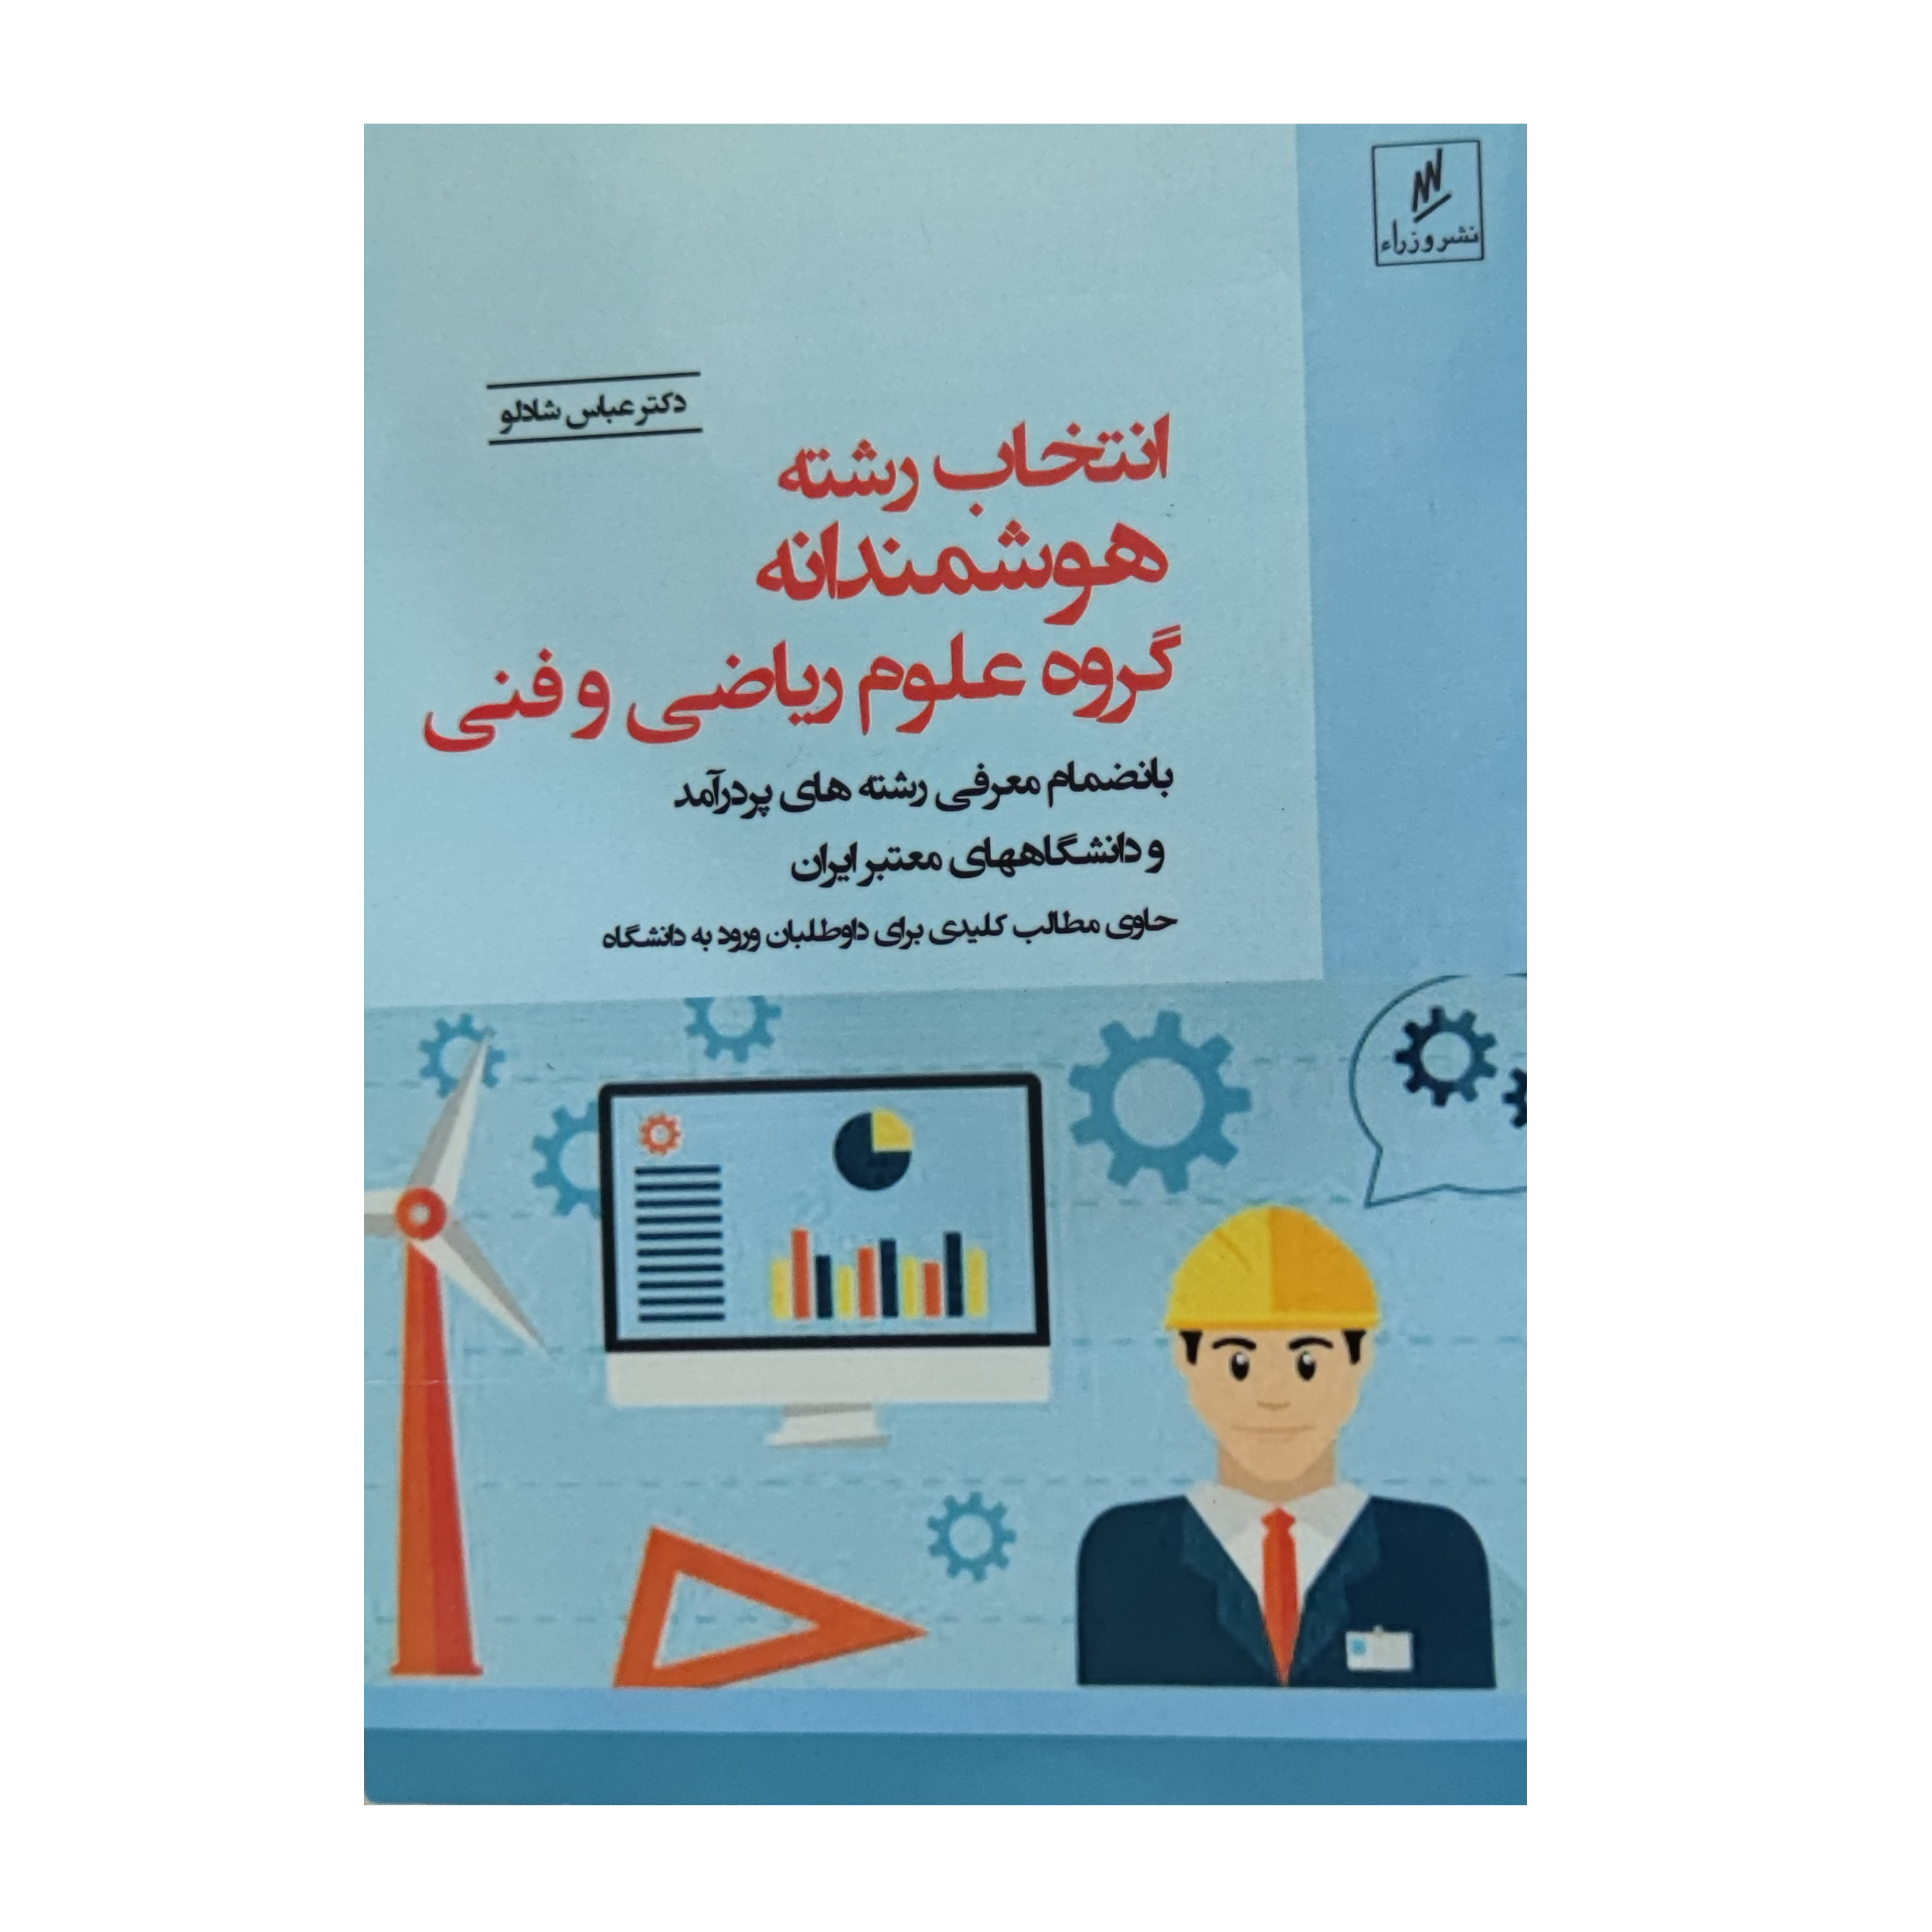 کتاب انتخاب هوشمندانه گروه علوم ریاضی و فنی اثر عباس شادلو انتشارات وزرا